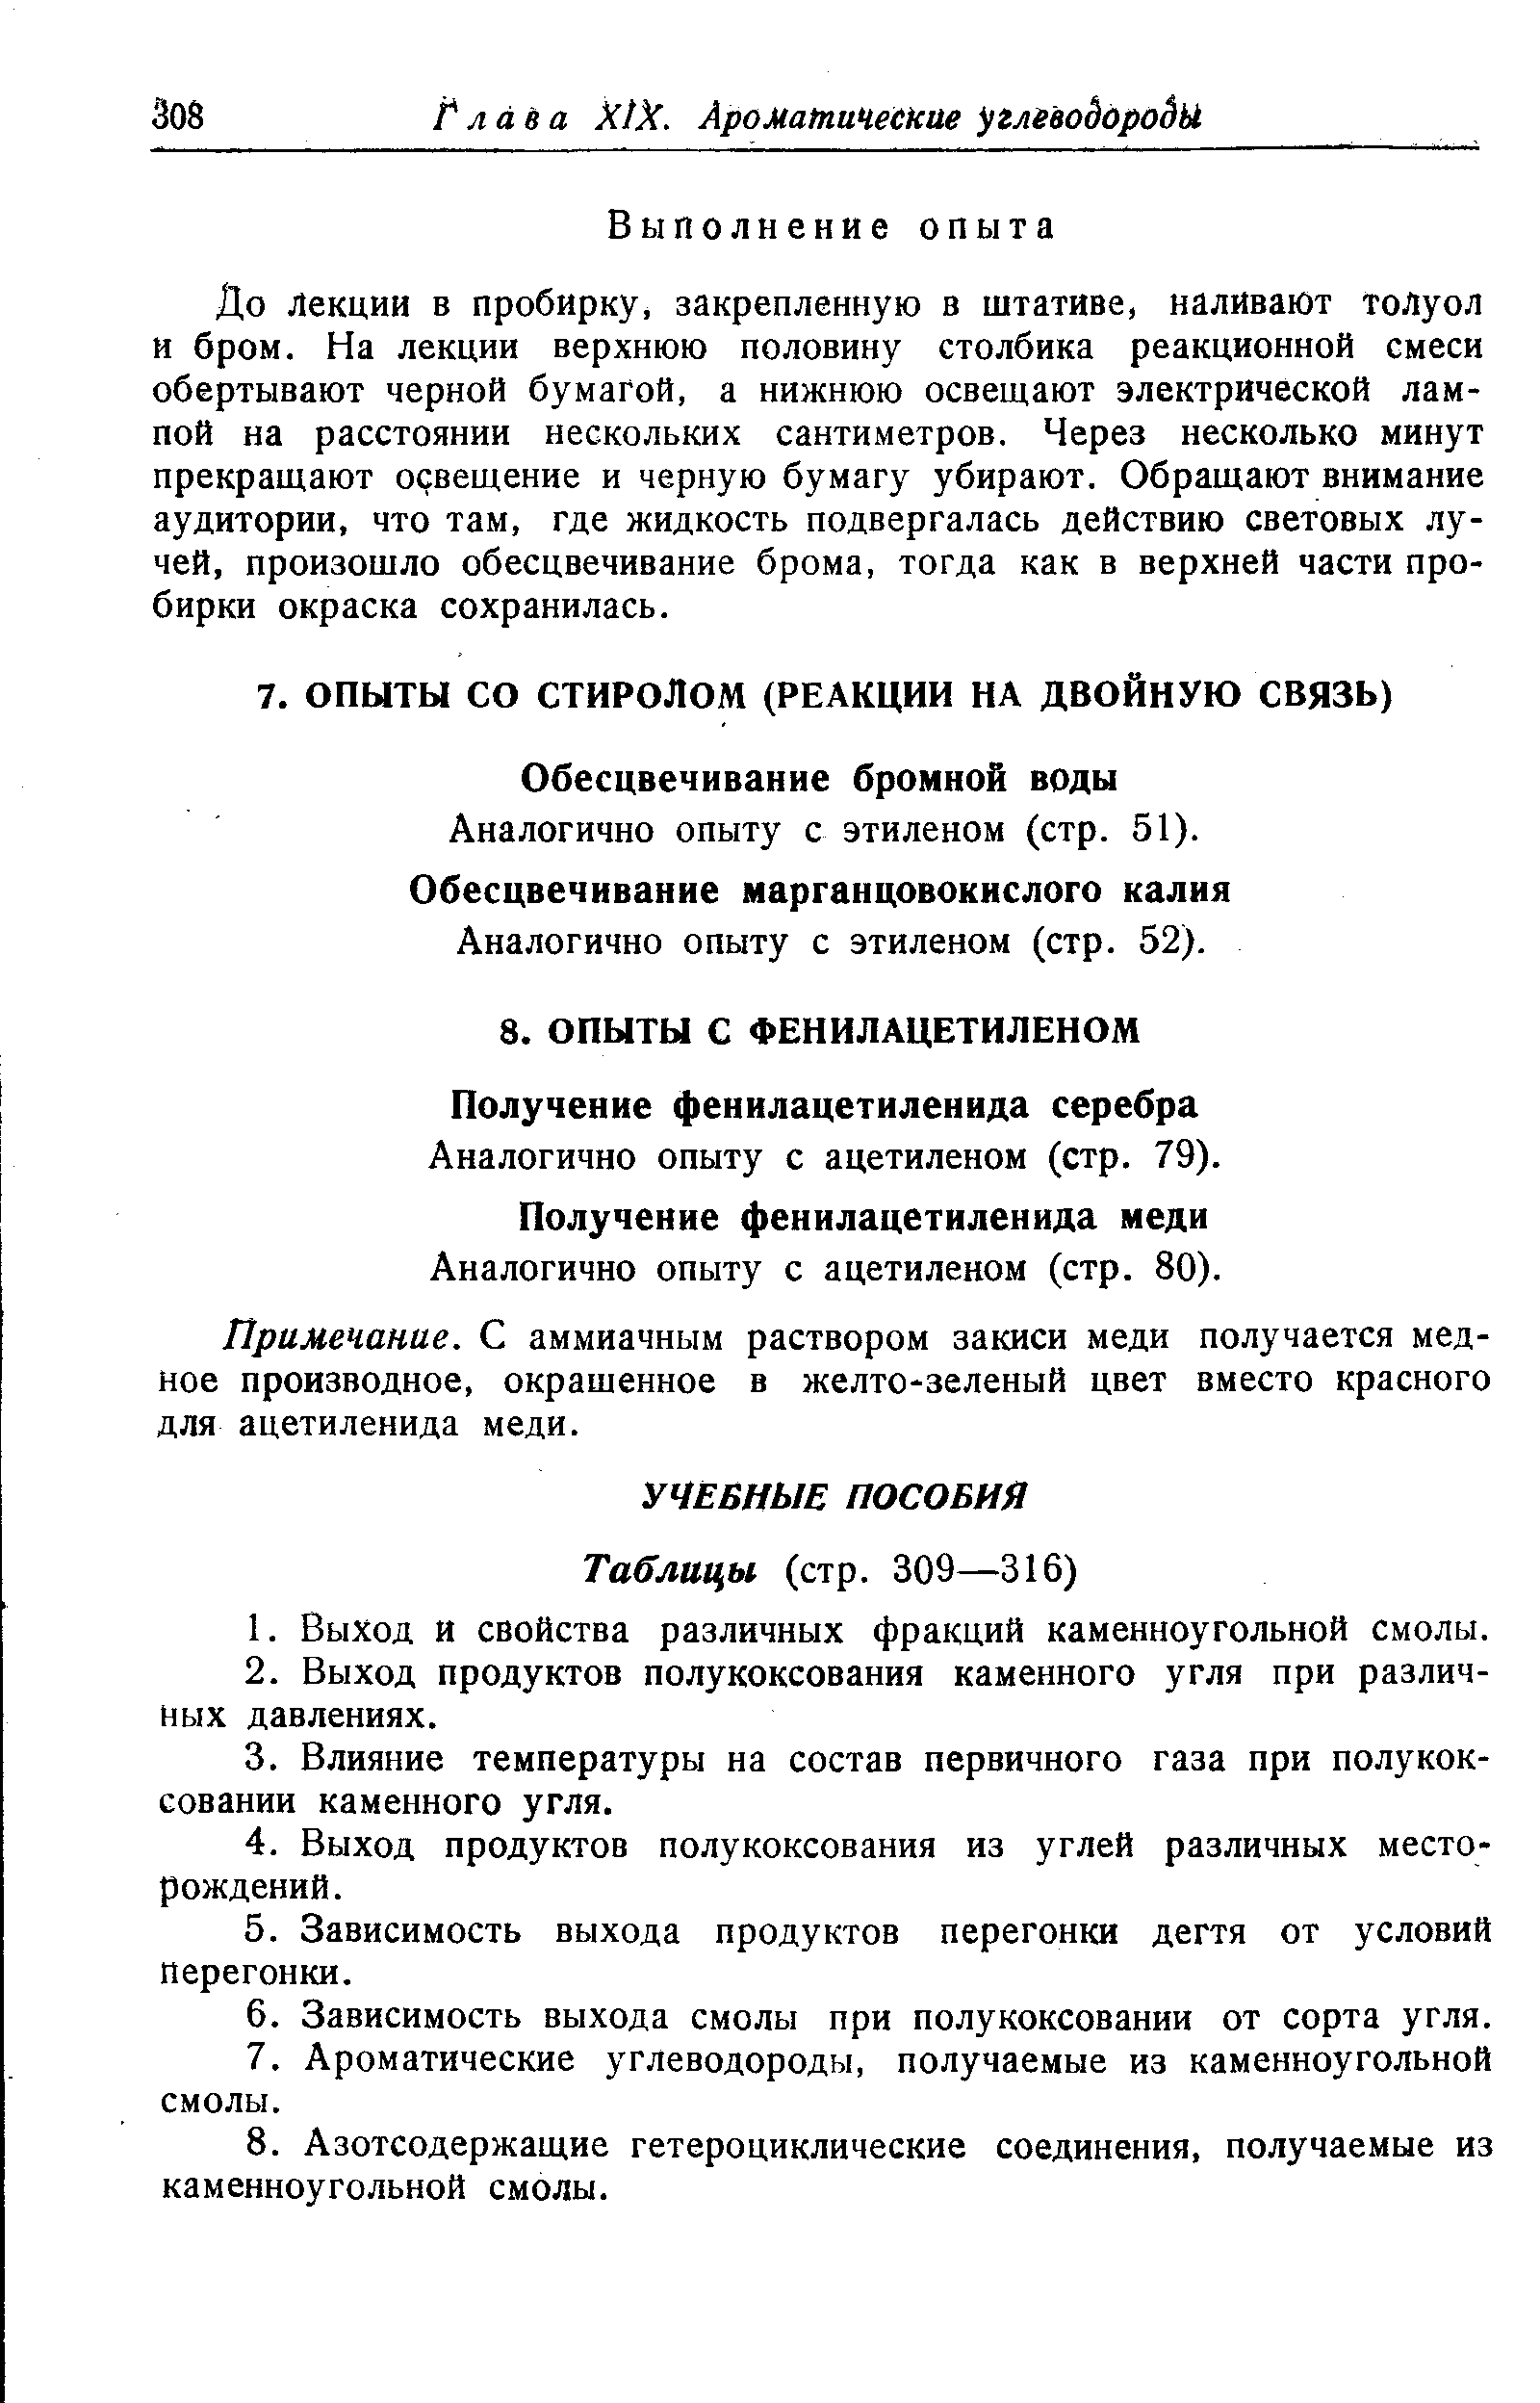 Аналогично опыту с ацетиленом (стр. 79).